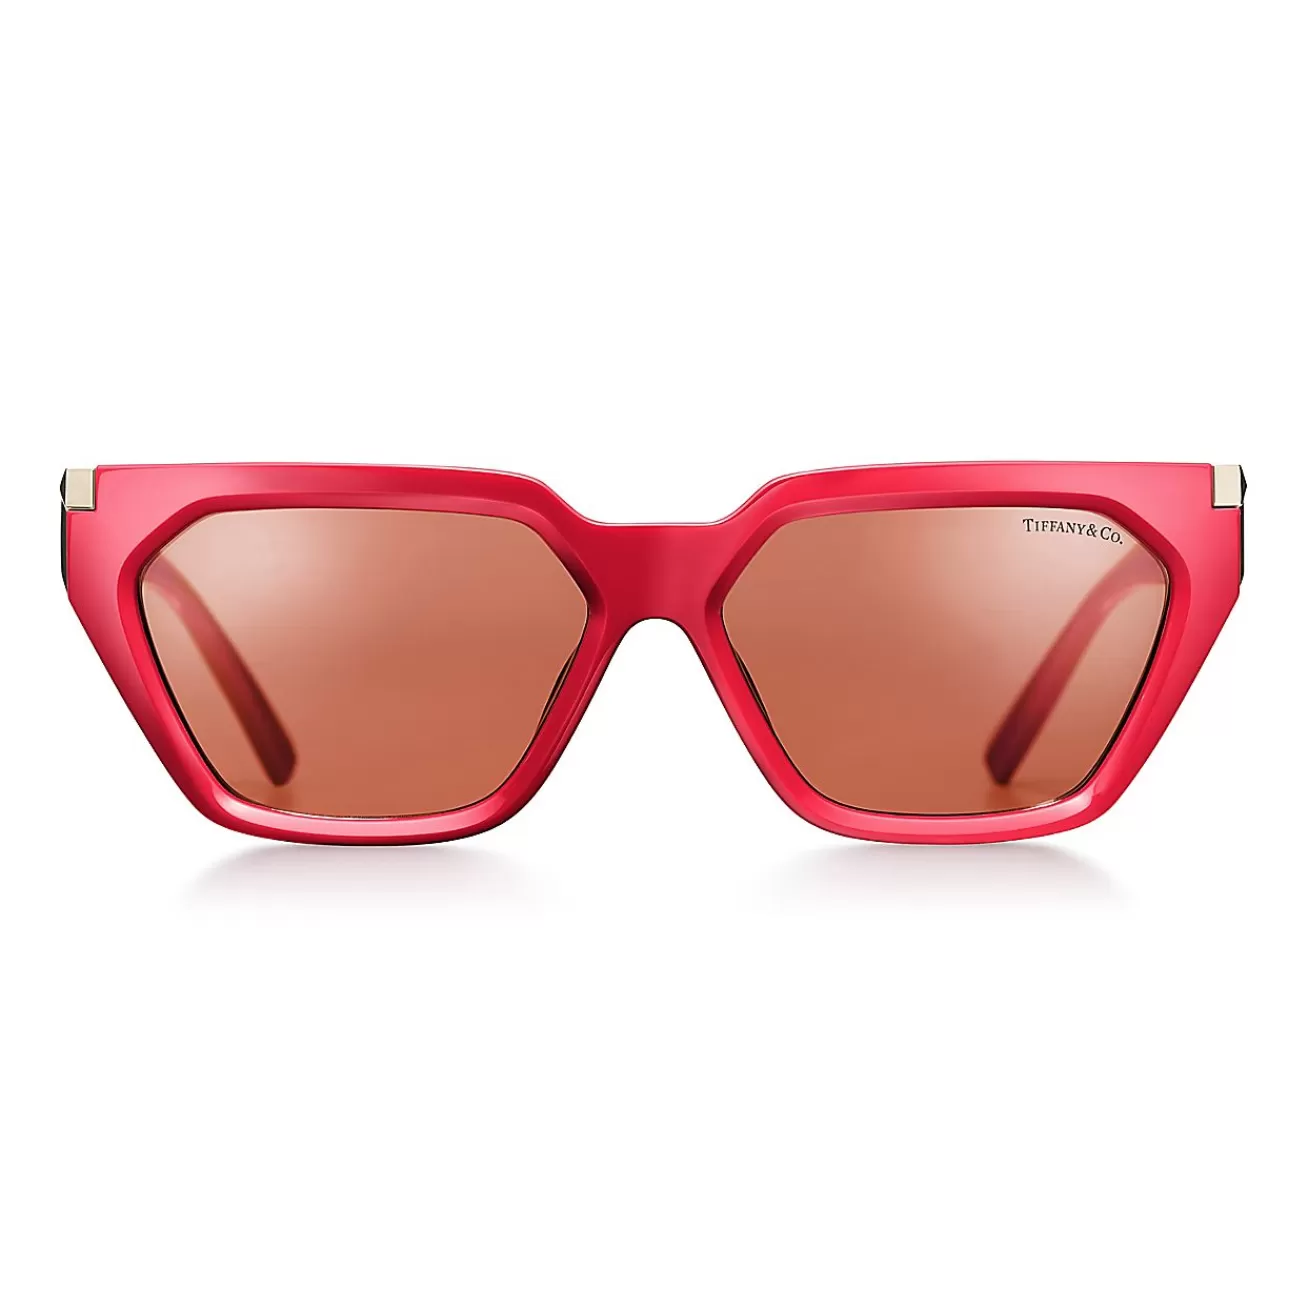 Tiffany & Co. Tiffany T Sunglasses in Coral Acetate with Pink Lenses | ^Women Tiffany T | Sunglasses